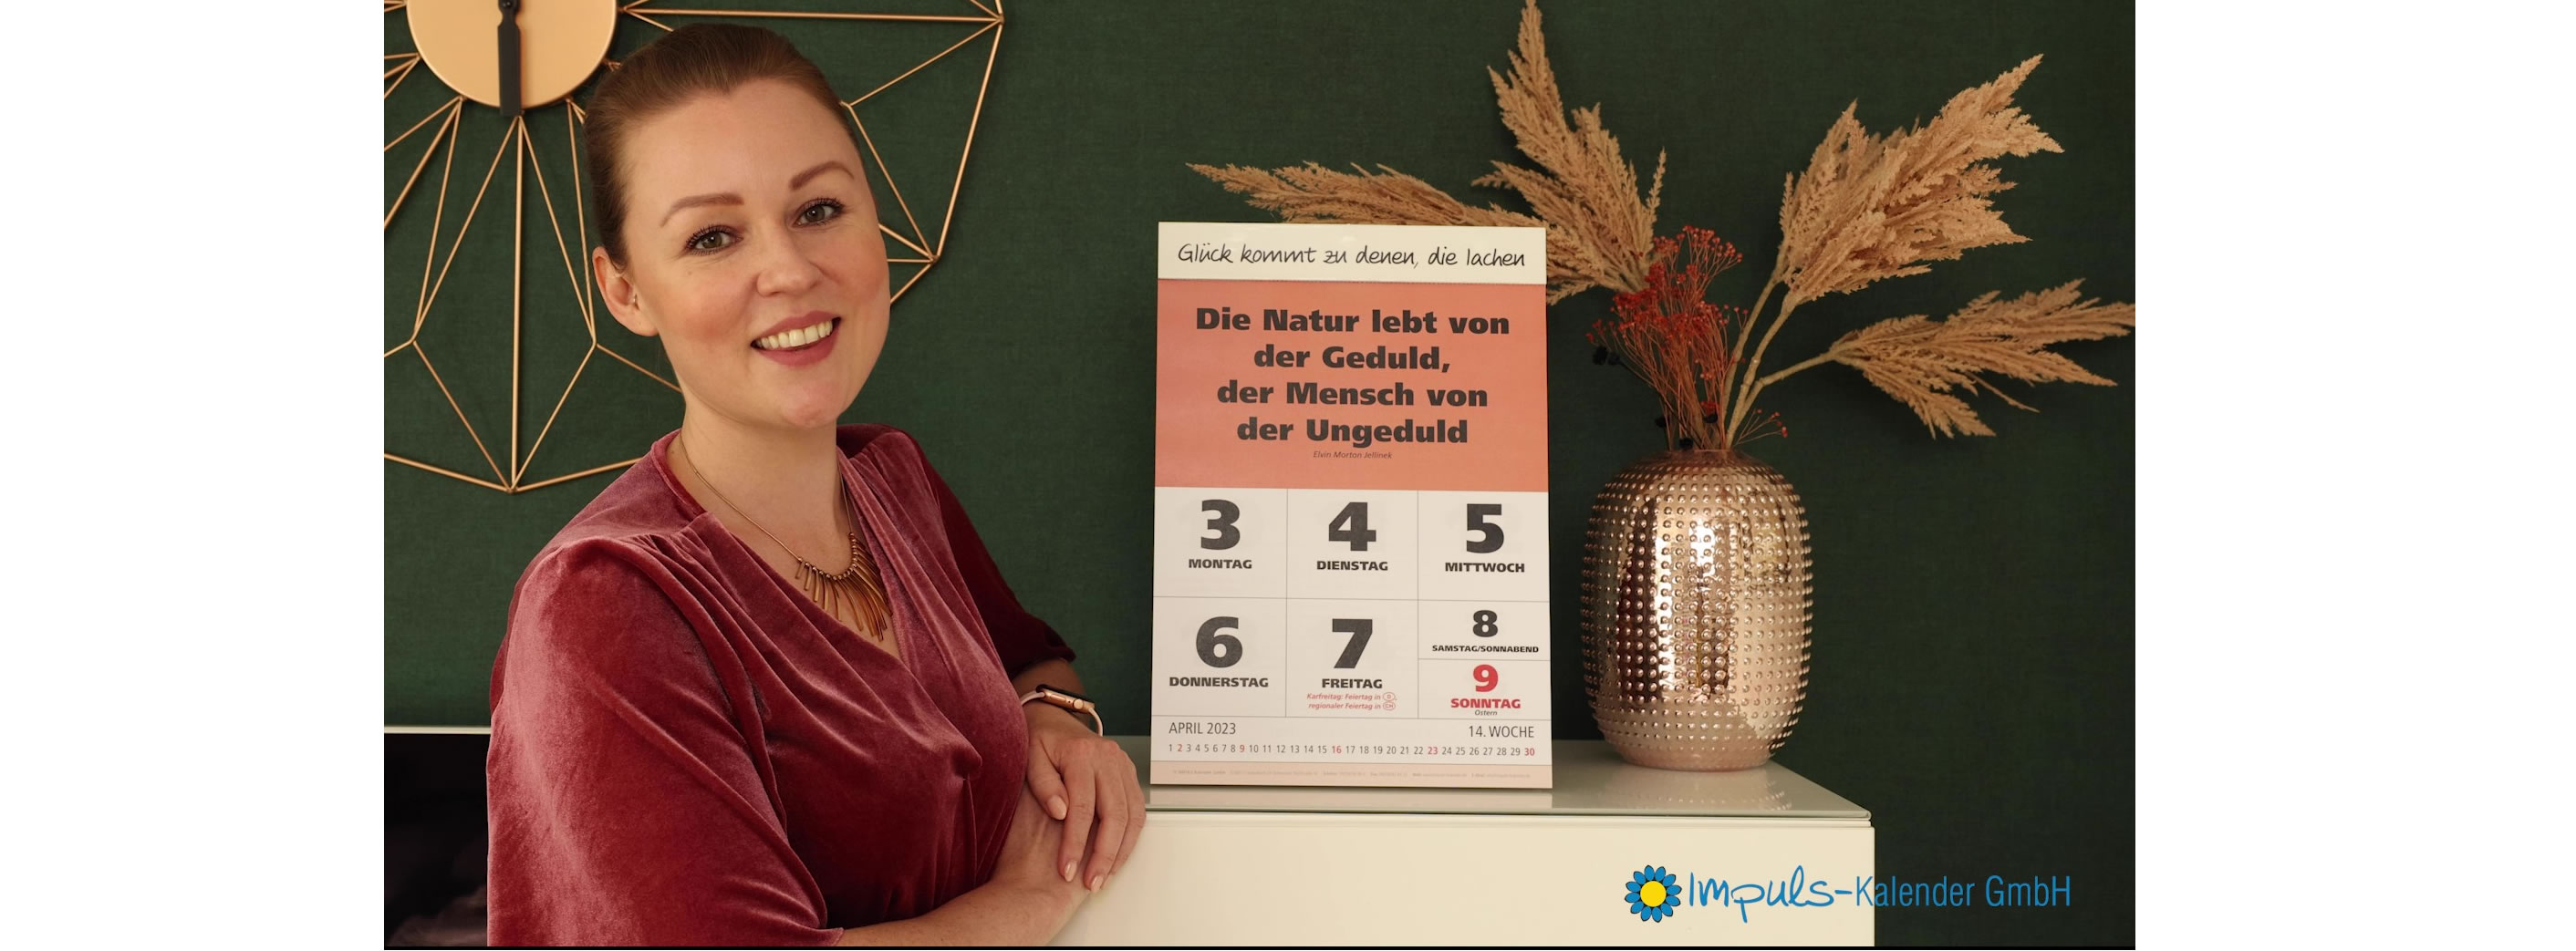 Wochensprüche-Kalender von Impuls-Kalender GmbH mit wöchentlichem Motivationsspruch, englischer Übersetzung, Mondphasen, Namenstage Zitate Sprüche Leitspruch Lächle